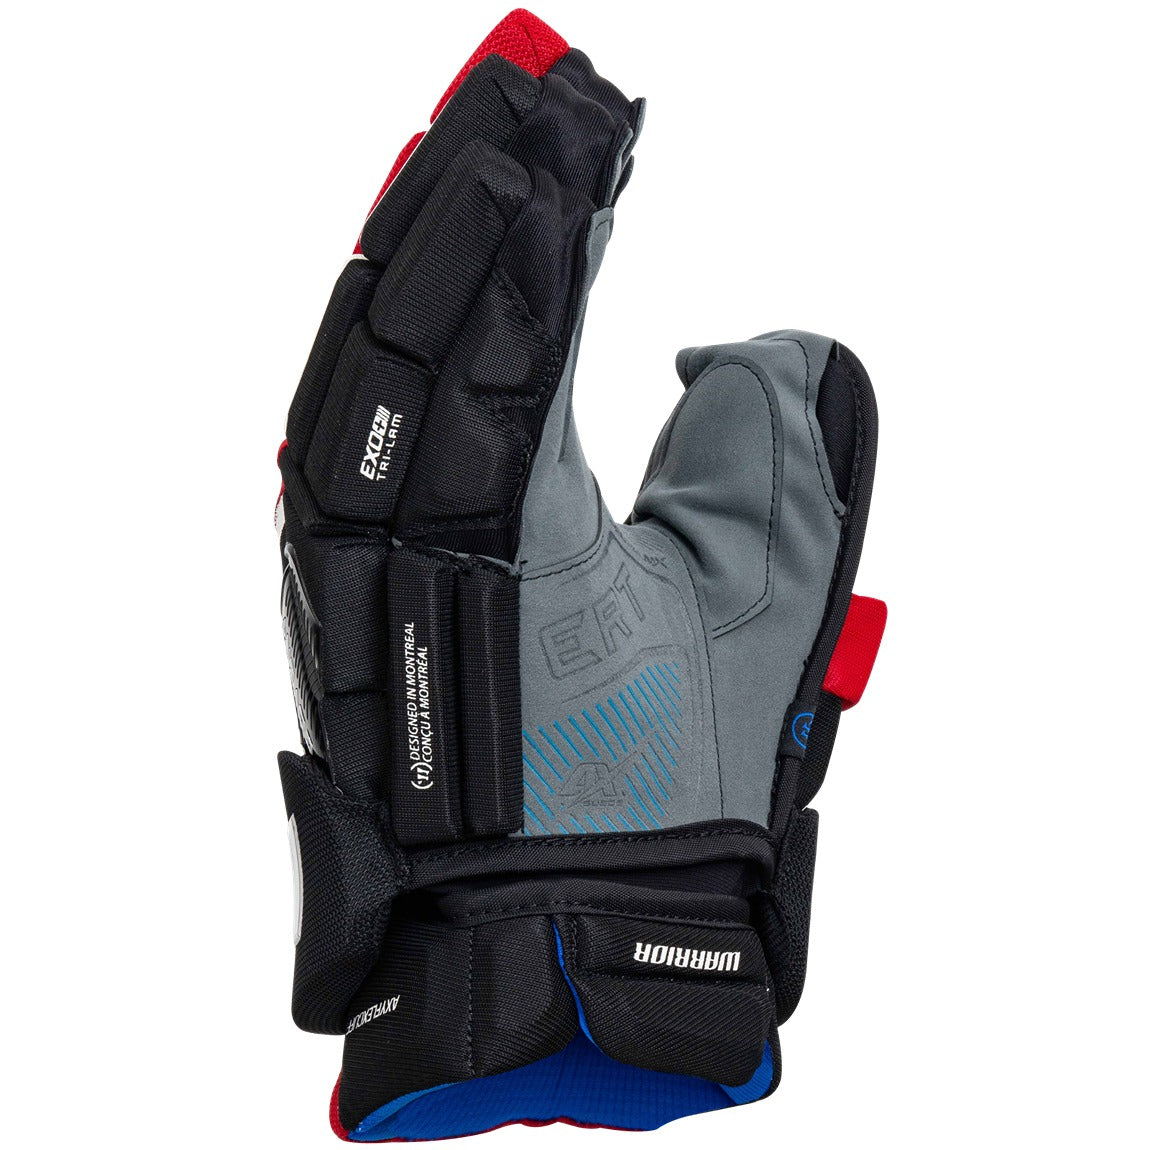 Warrior Covert QR6 Pro Hockey Gloves - Senior